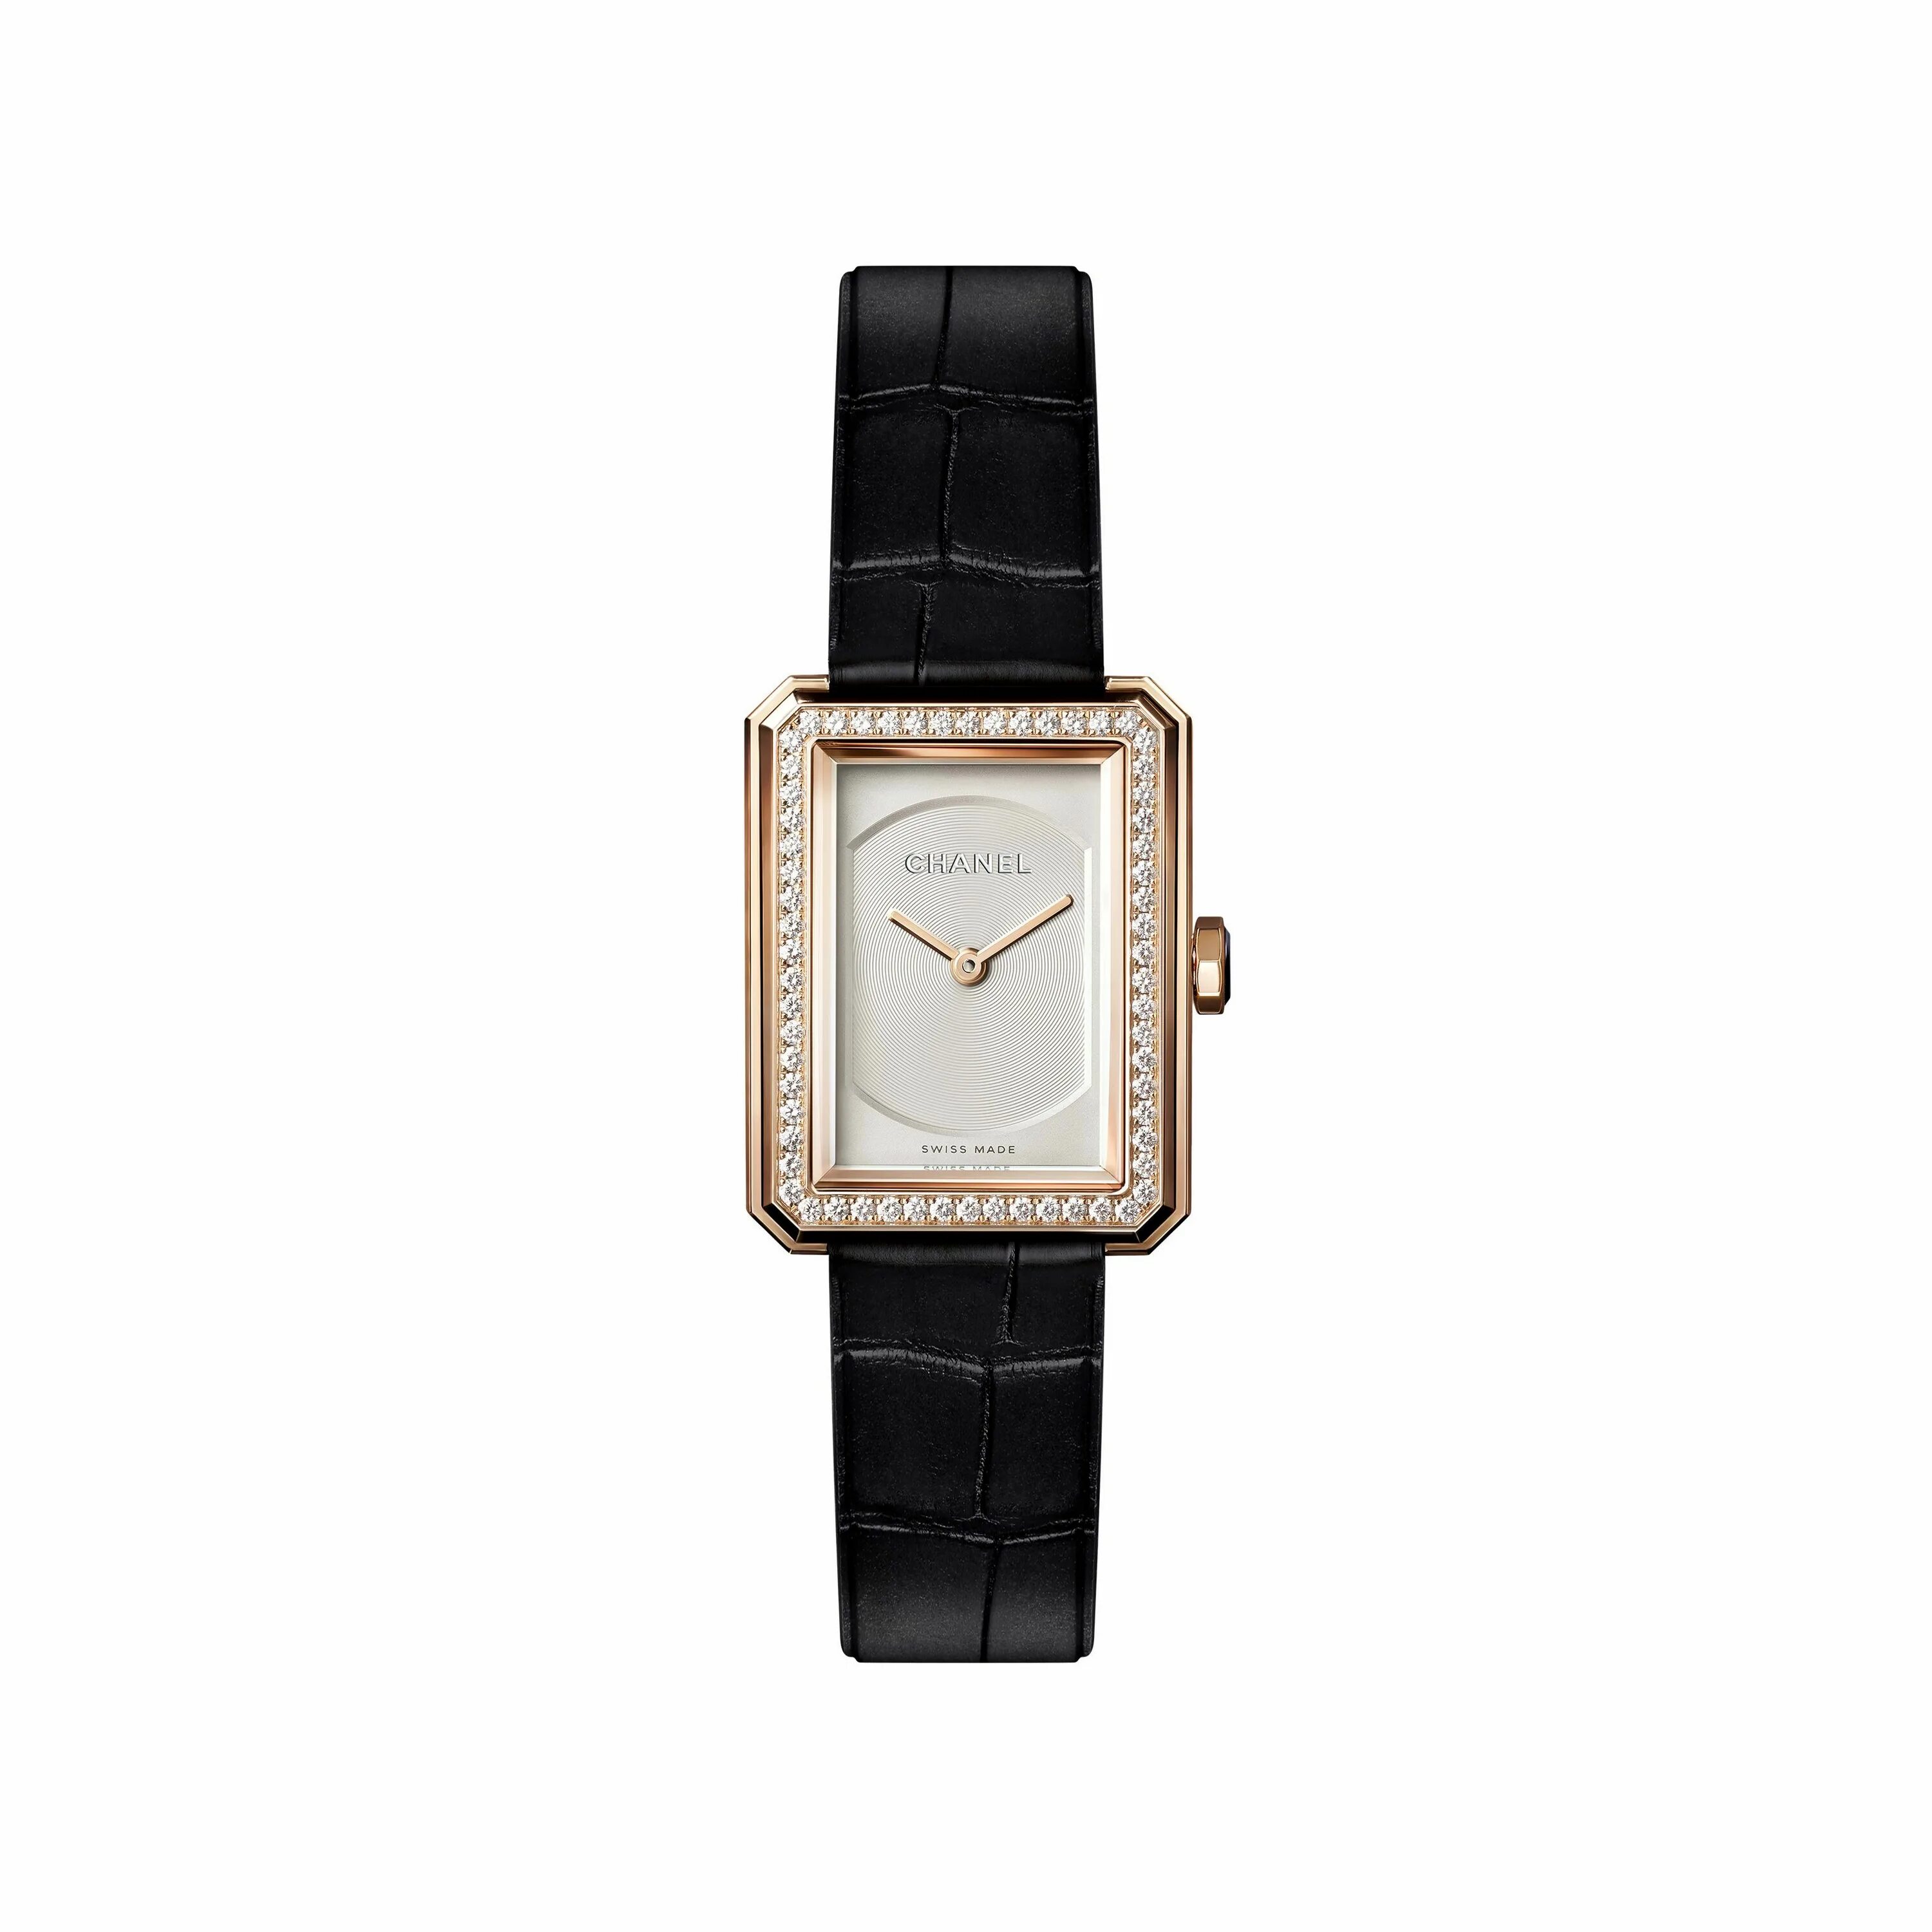 Наручные часы Chanel h3250. Часы Chanel. Часы Шанель с кожаным ремешком. Часы Chanel 0 2 5.